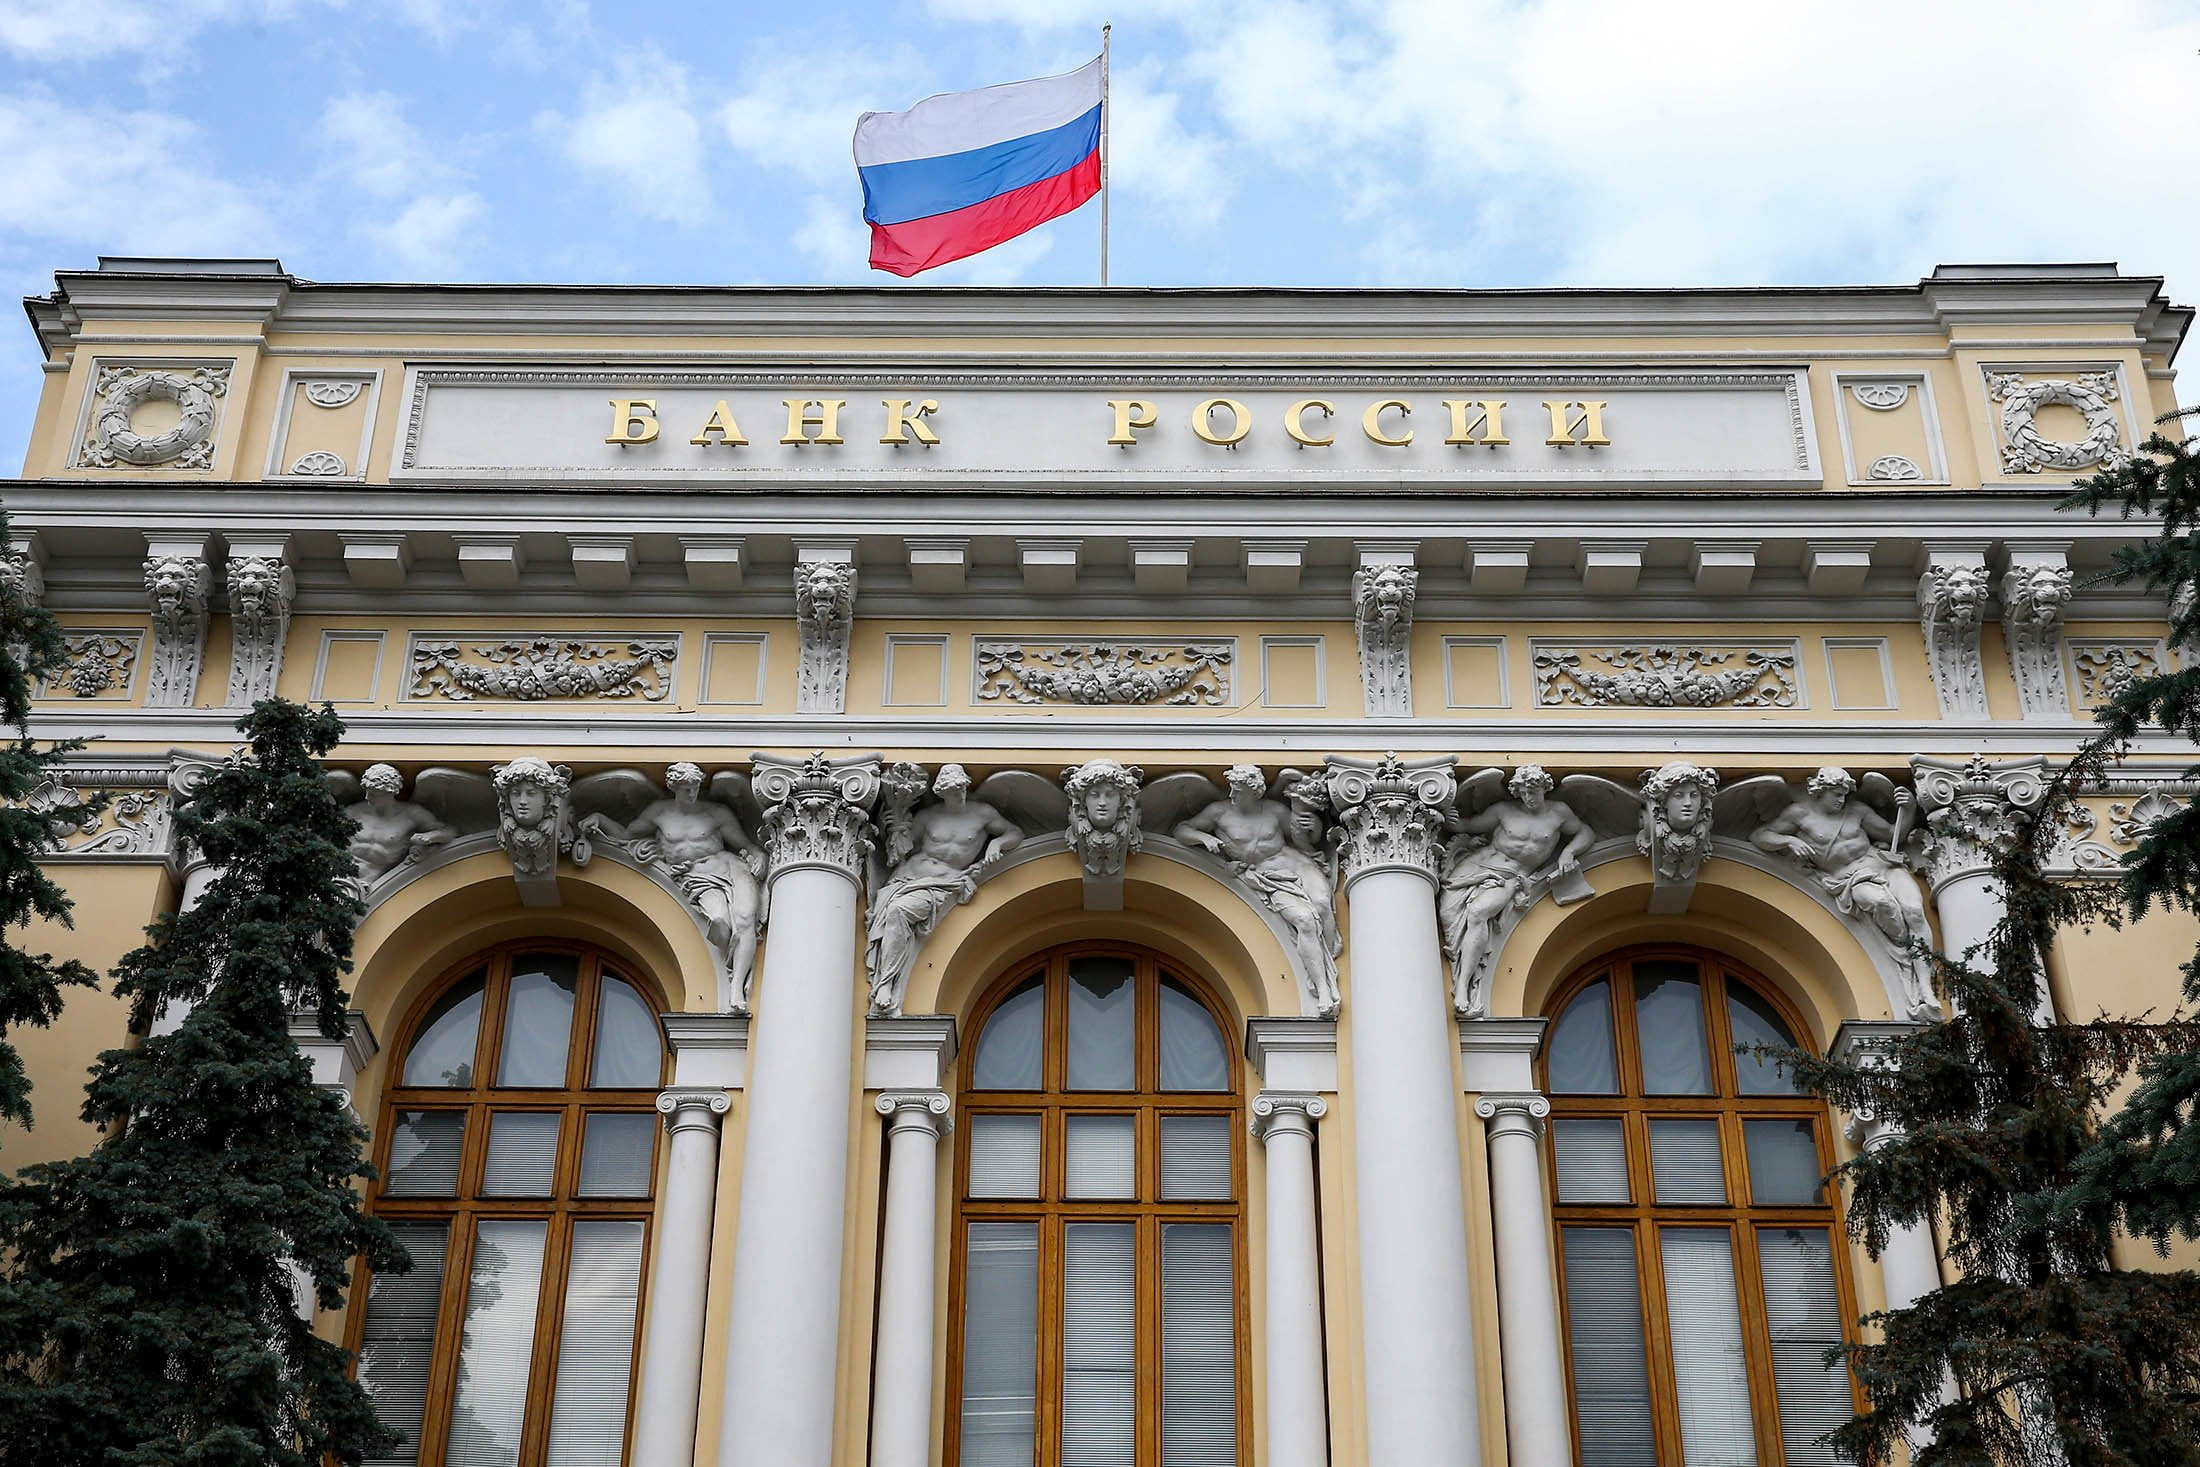 банк россия фото здания